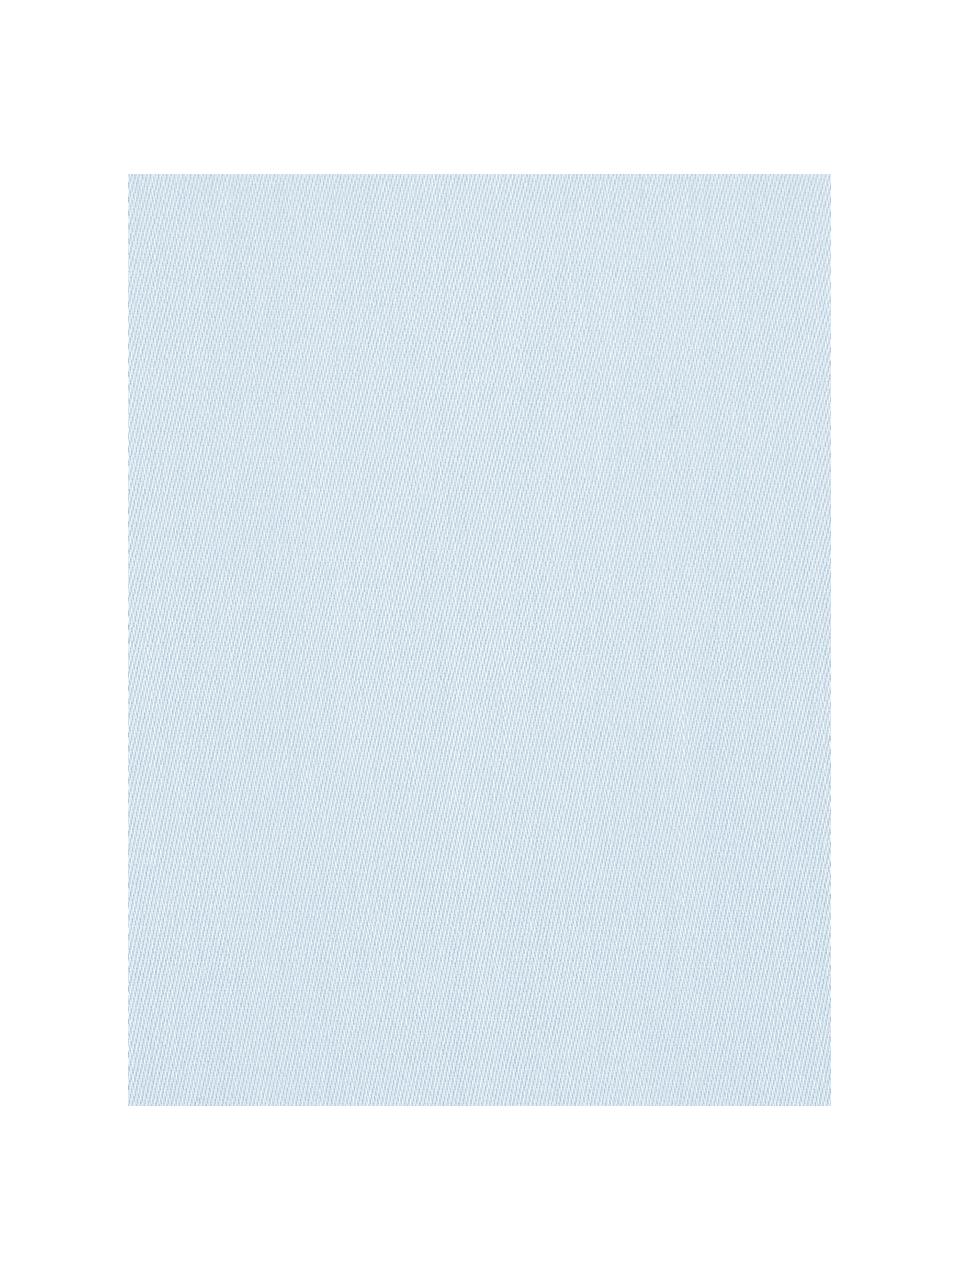 Parure copripiumino in raso di cotone Comfort, Azzurro, 255 x 200 cm + 2 federe 50 x 80 cm